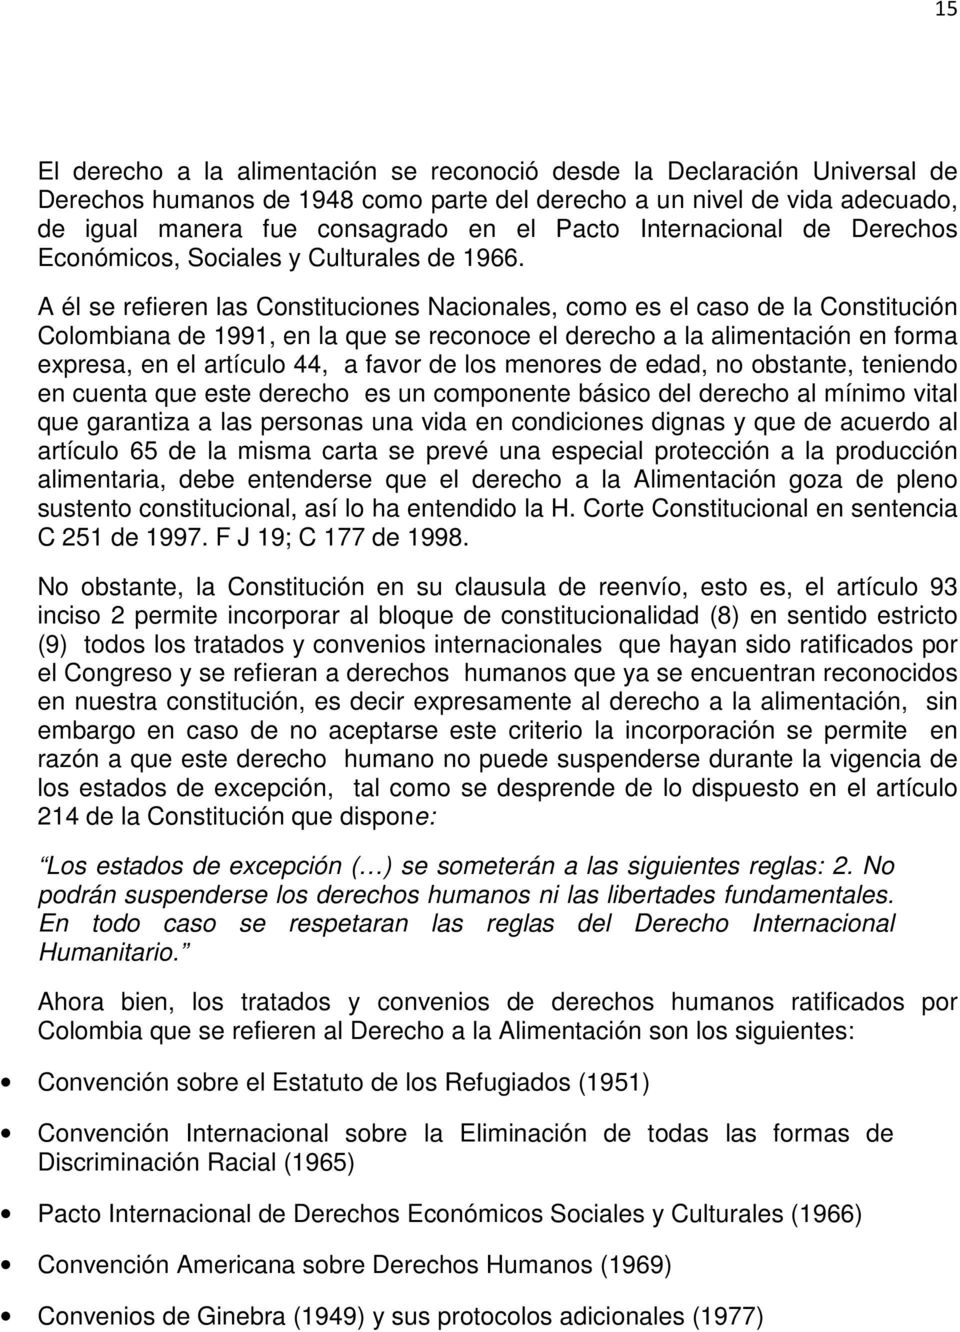 A él se refieren las Constituciones Nacionales, como es el caso de la Constitución Colombiana de 1991, en la que se reconoce el derecho a la alimentación en forma expresa, en el artículo 44, a favor